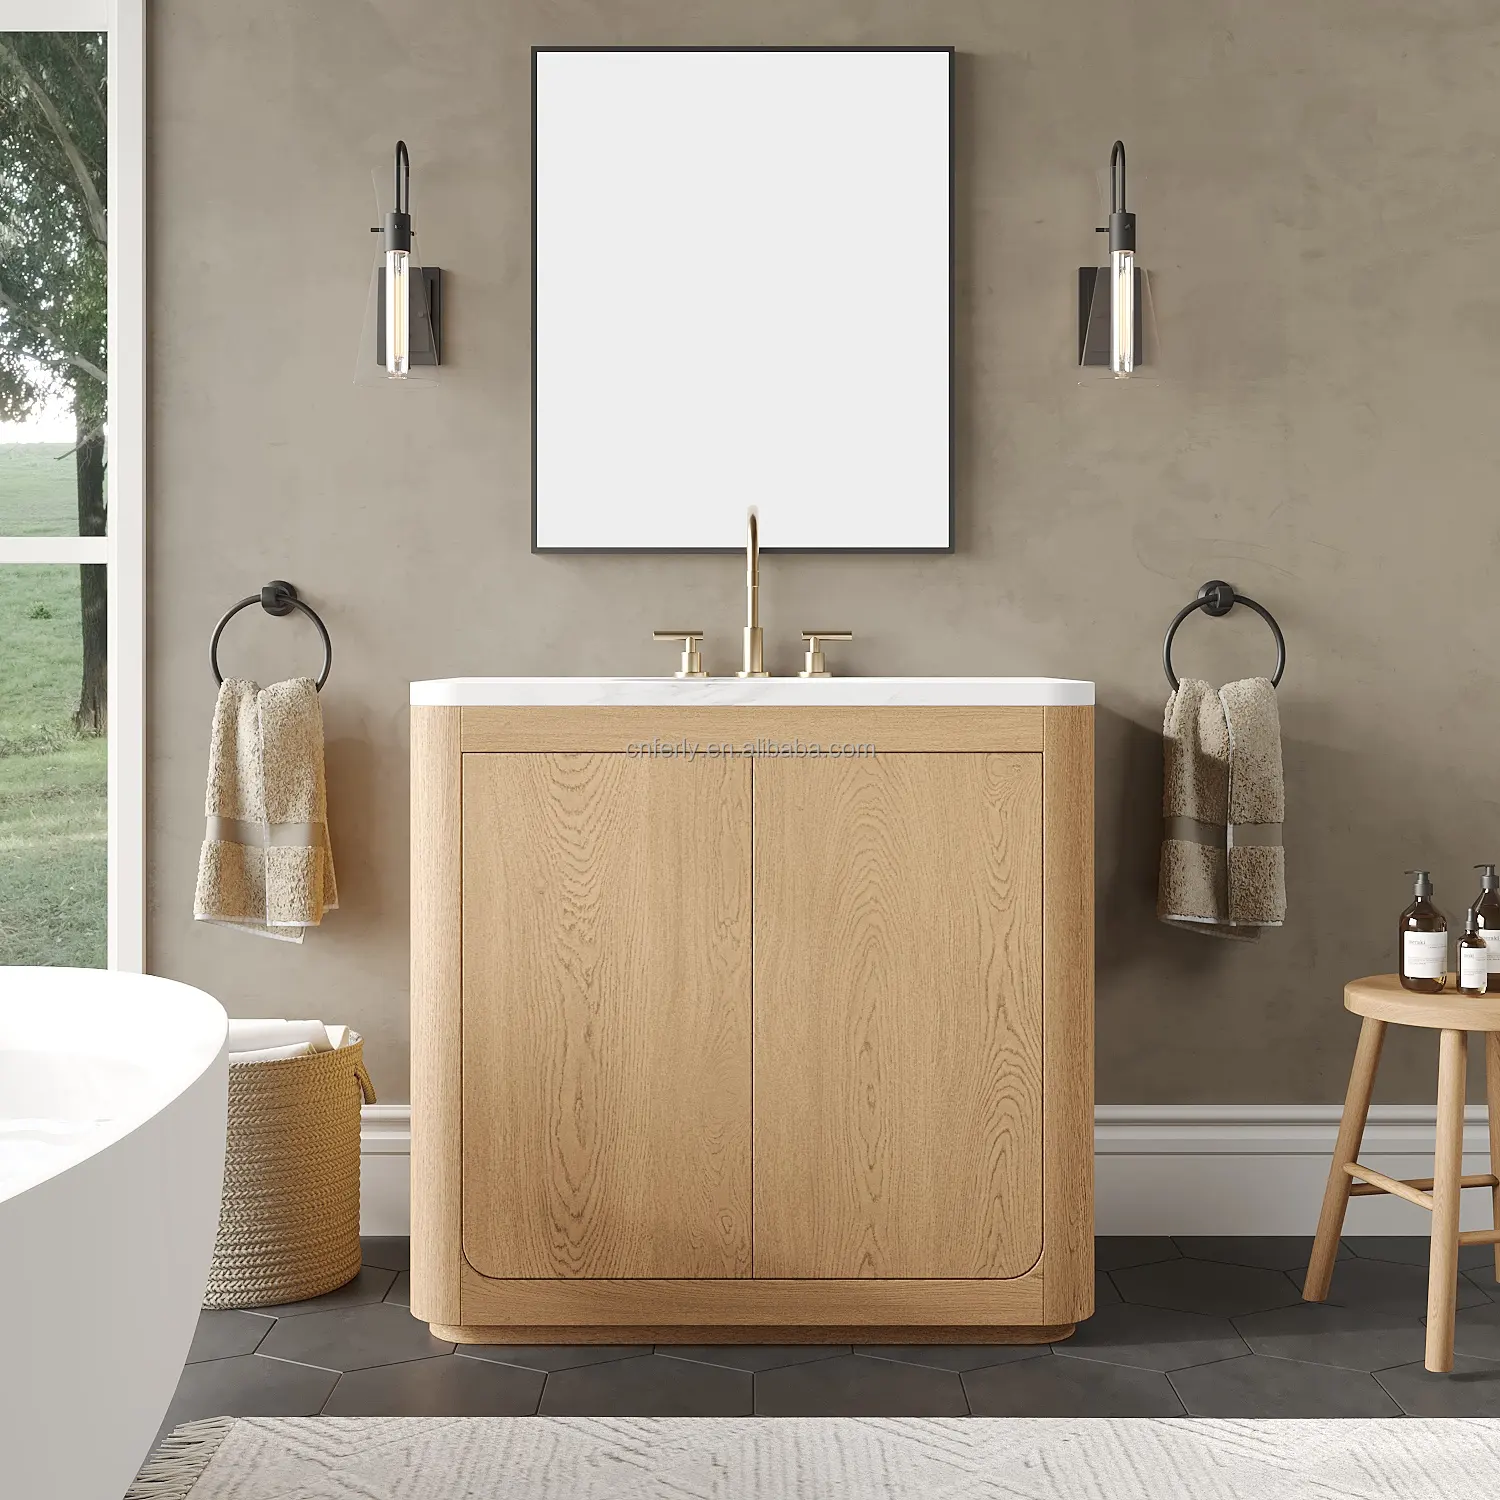 סגנון אמריקאי כמעט מודרני עץ מלא יהירות כפולה עץ חדר אמבטיה יהירות כיור כפול חדר אמבטיה יהירות לחדר אמבטיה במלון